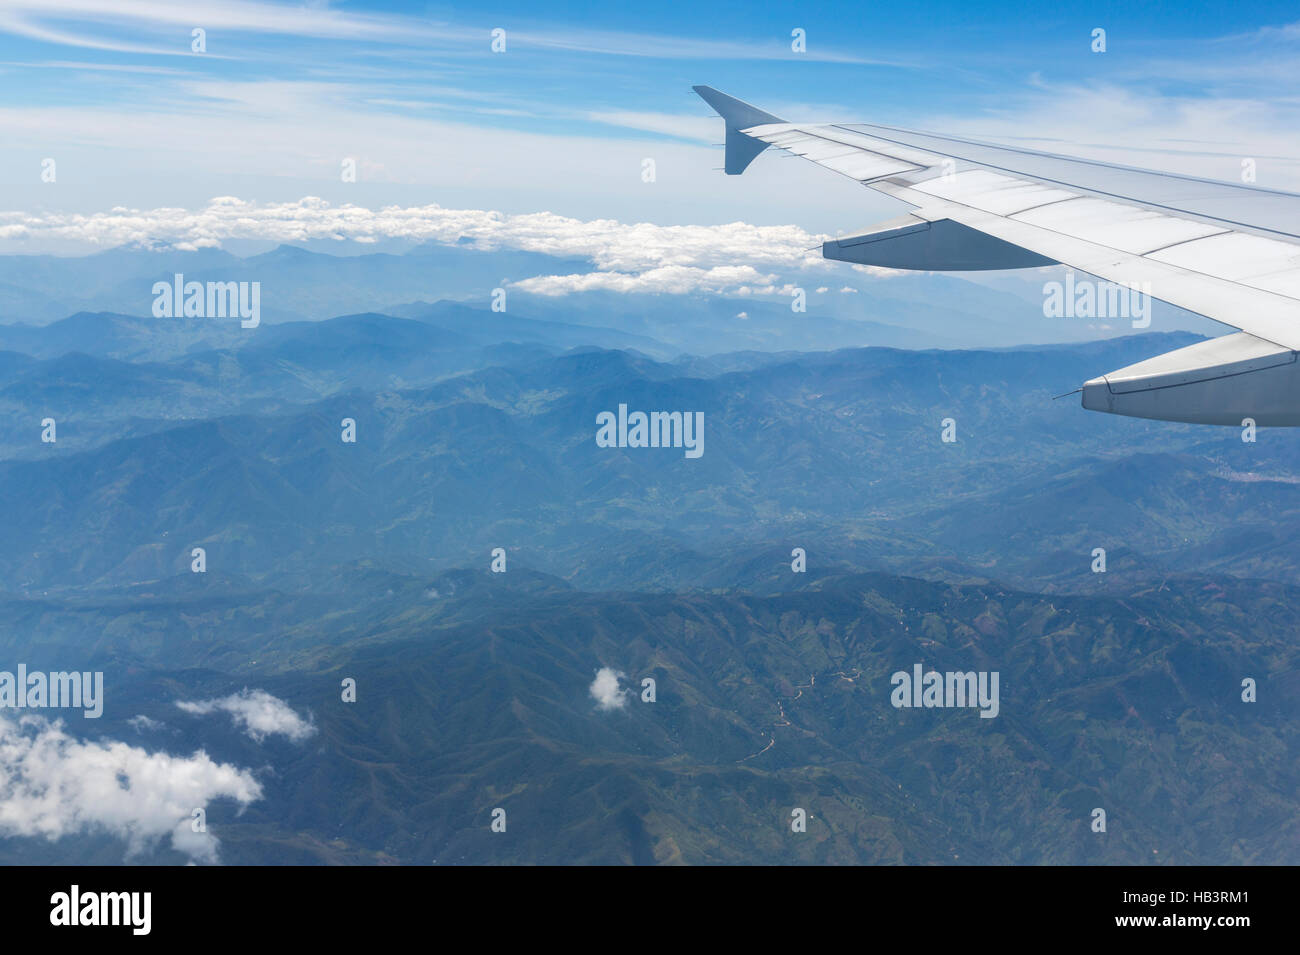 Vue aérienne de montagnes andines et aile d'avion, Colombie Banque D'Images